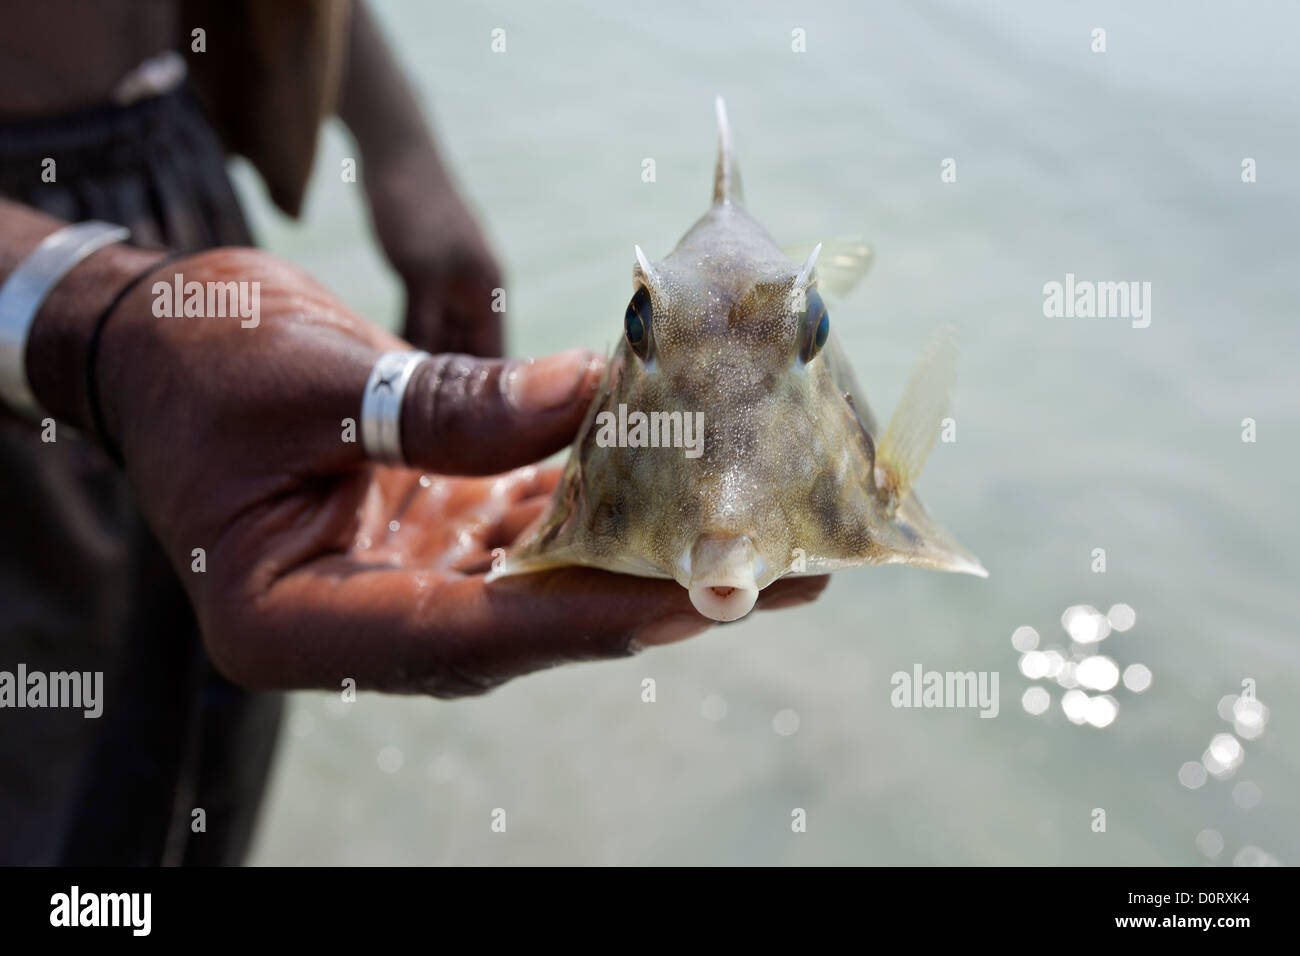 Pesce palloncino immagini e fotografie stock ad alta risoluzione - Alamy